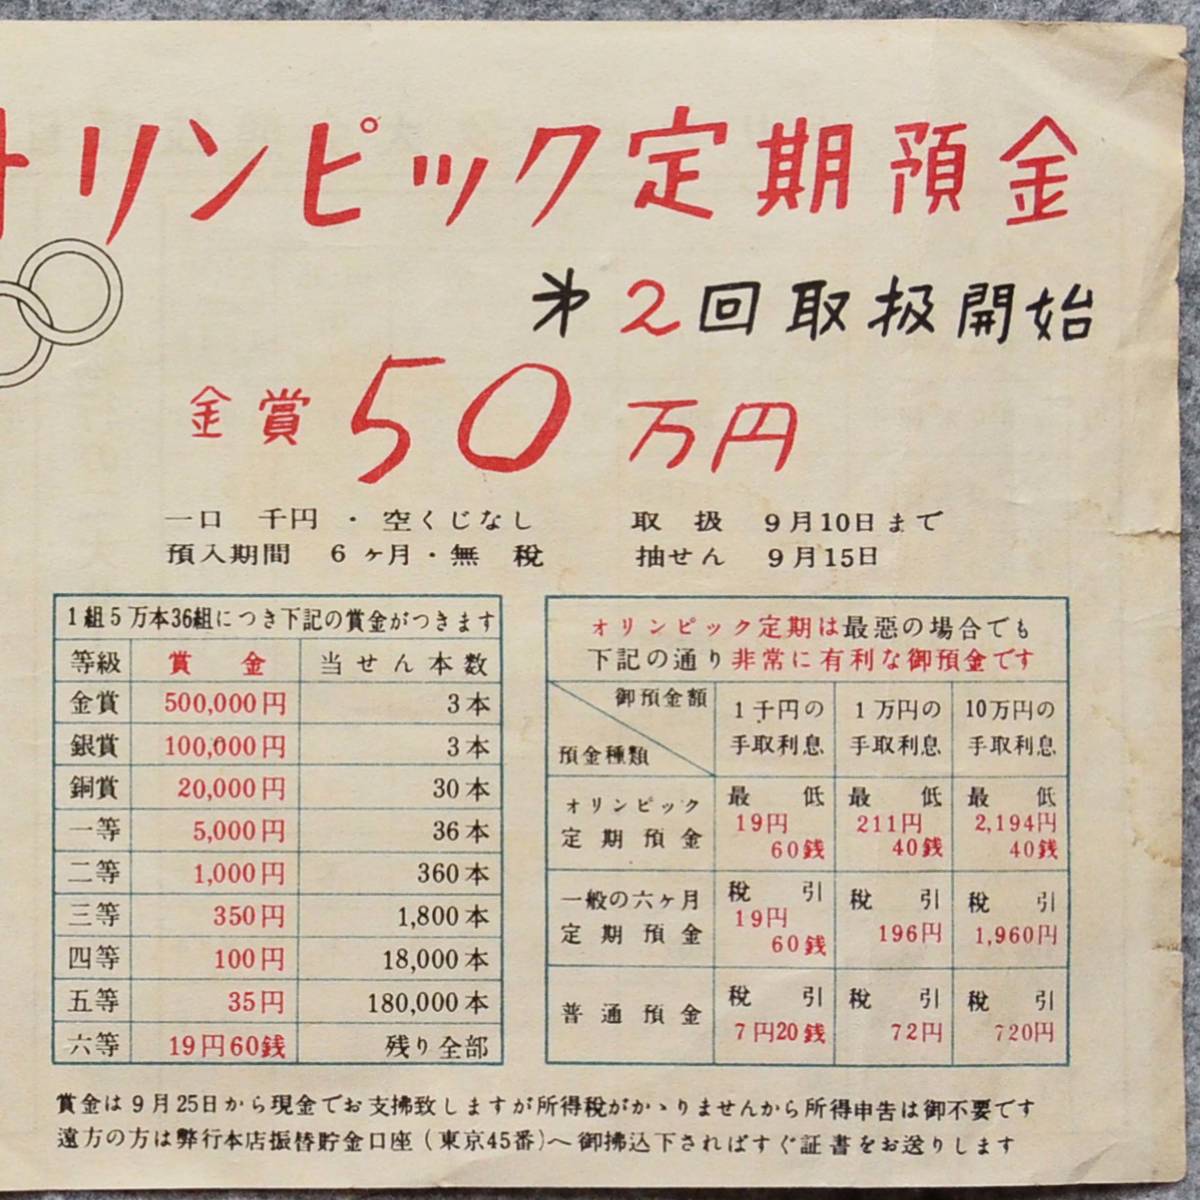 昔のチラシ 東京銀行 オリンピック定期預金 銀行 広告 関係資料_画像3